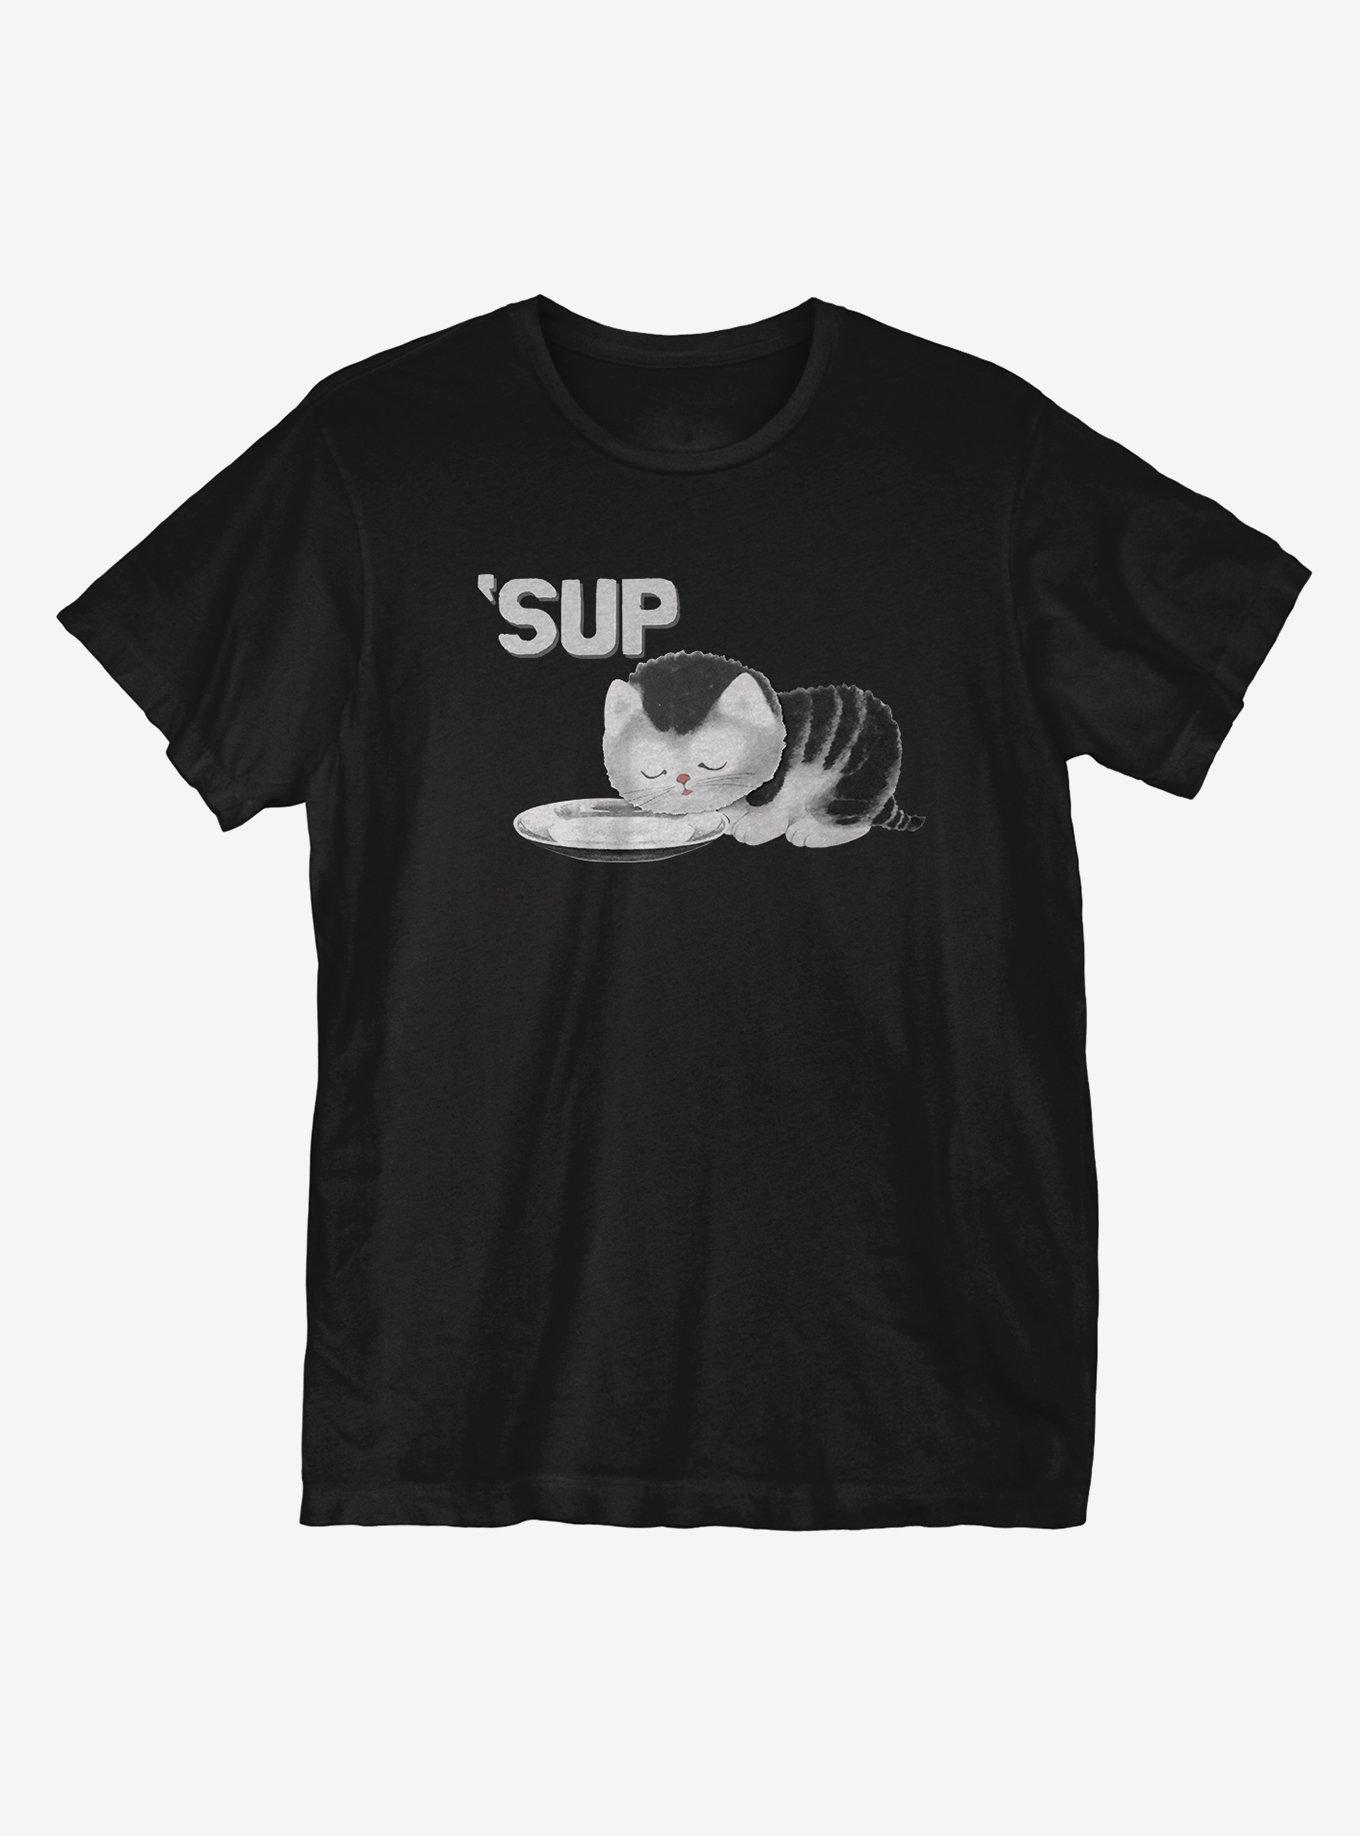 Sup T-Shirt, BLACK, hi-res